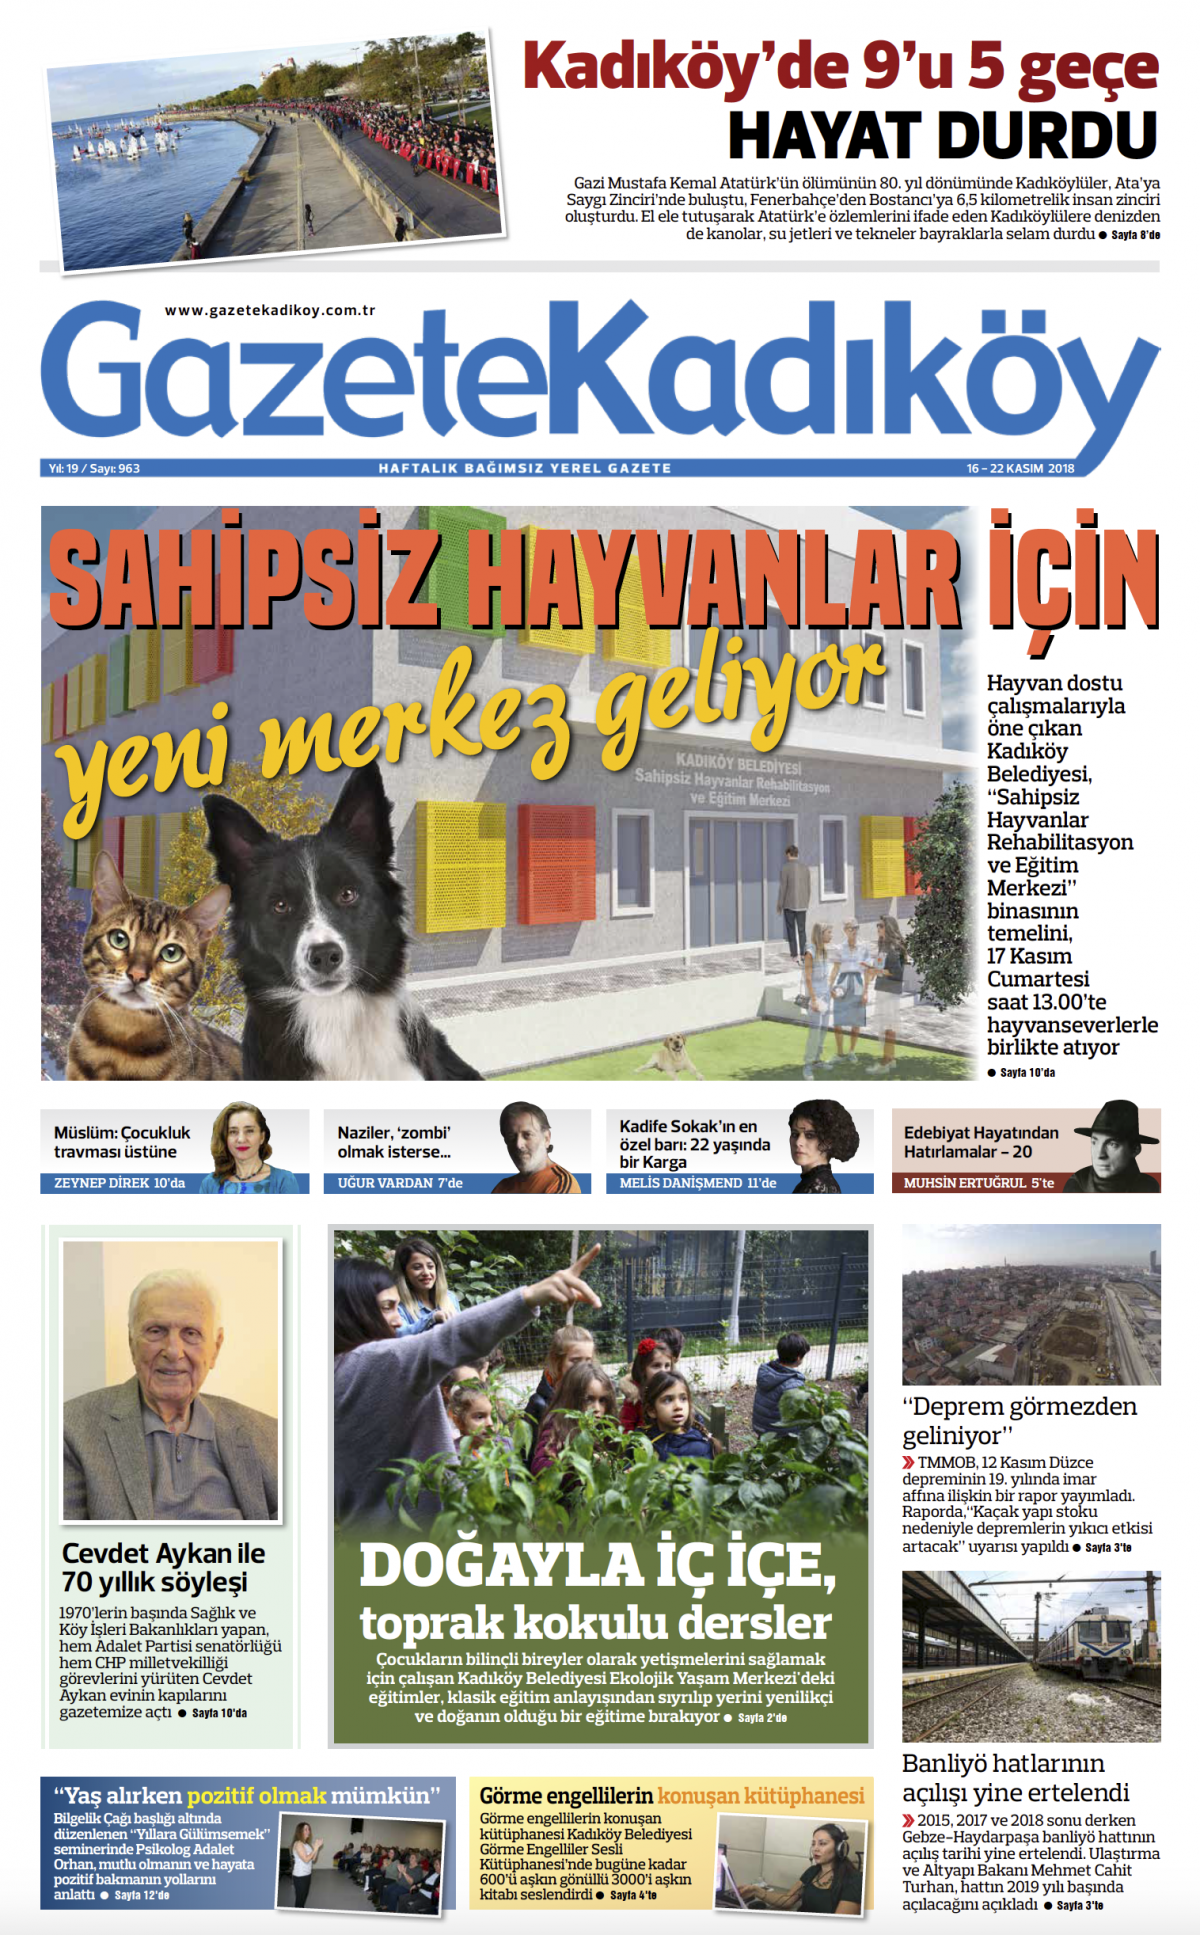 Gazete Kadıköy - 963. SAYI